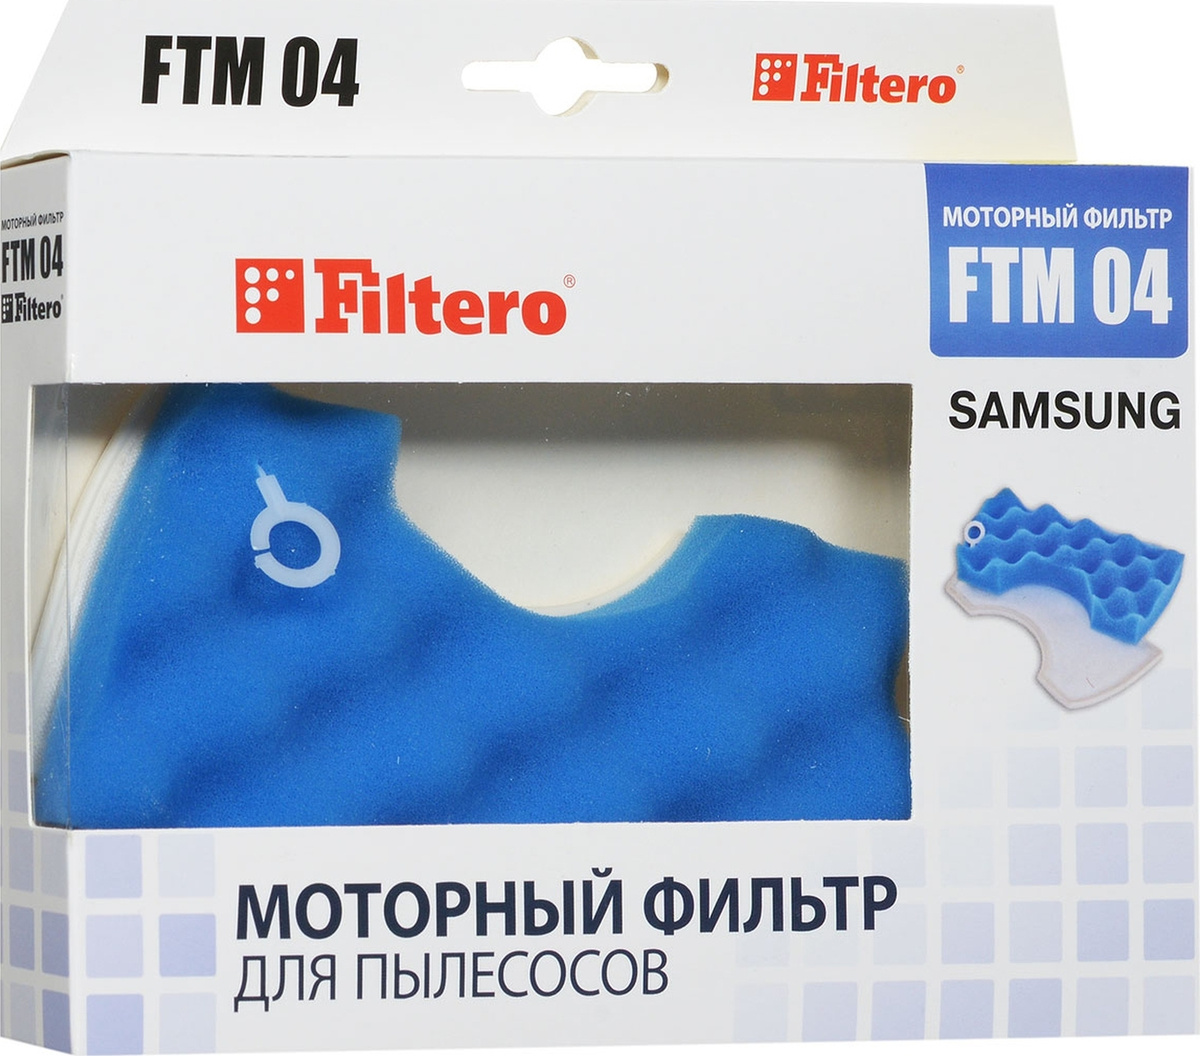 Моторный фильтр Filtero FTM 04 для пылесосов Samsung #1